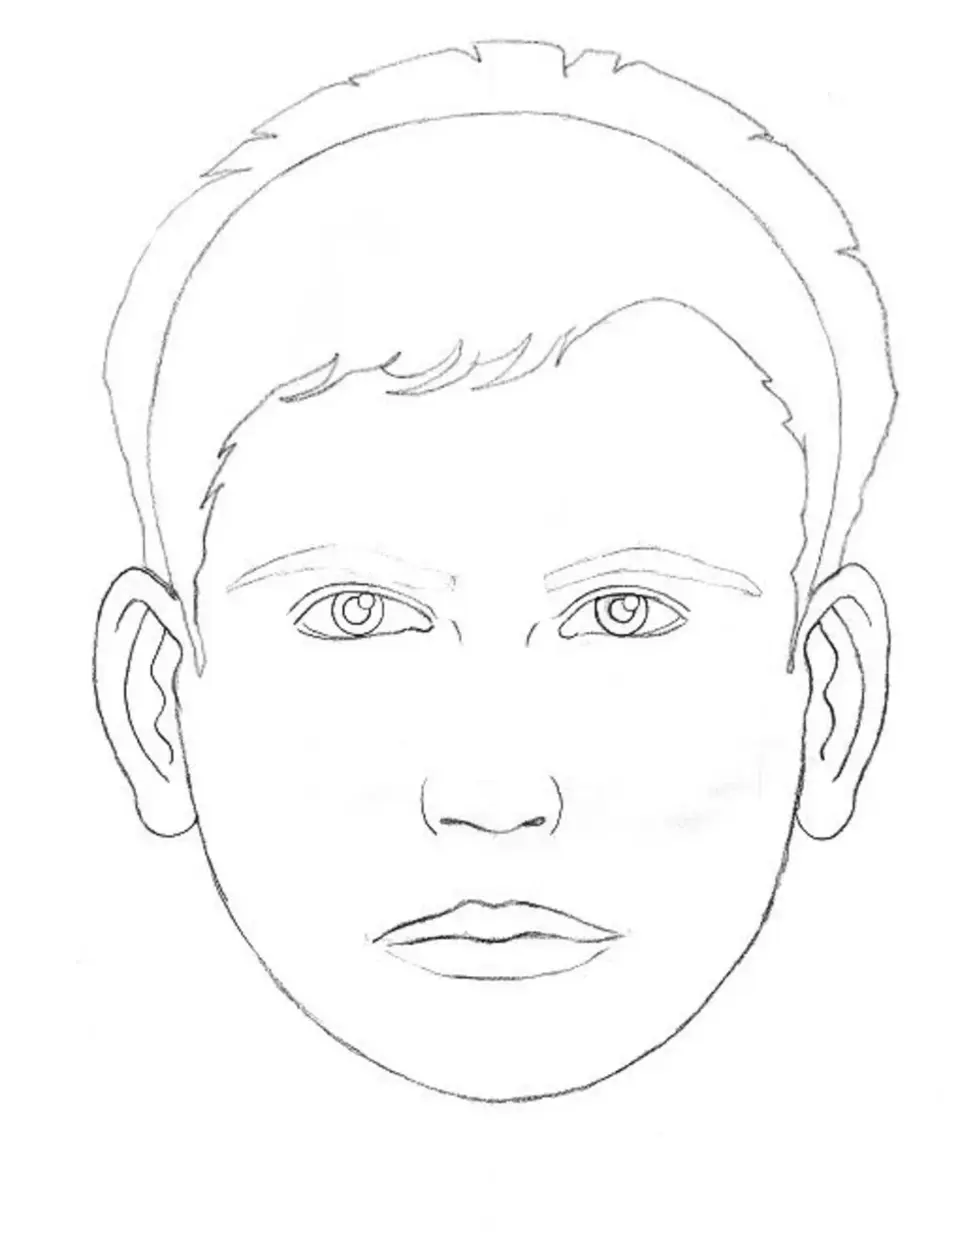 Рисунок лица человека карандашом